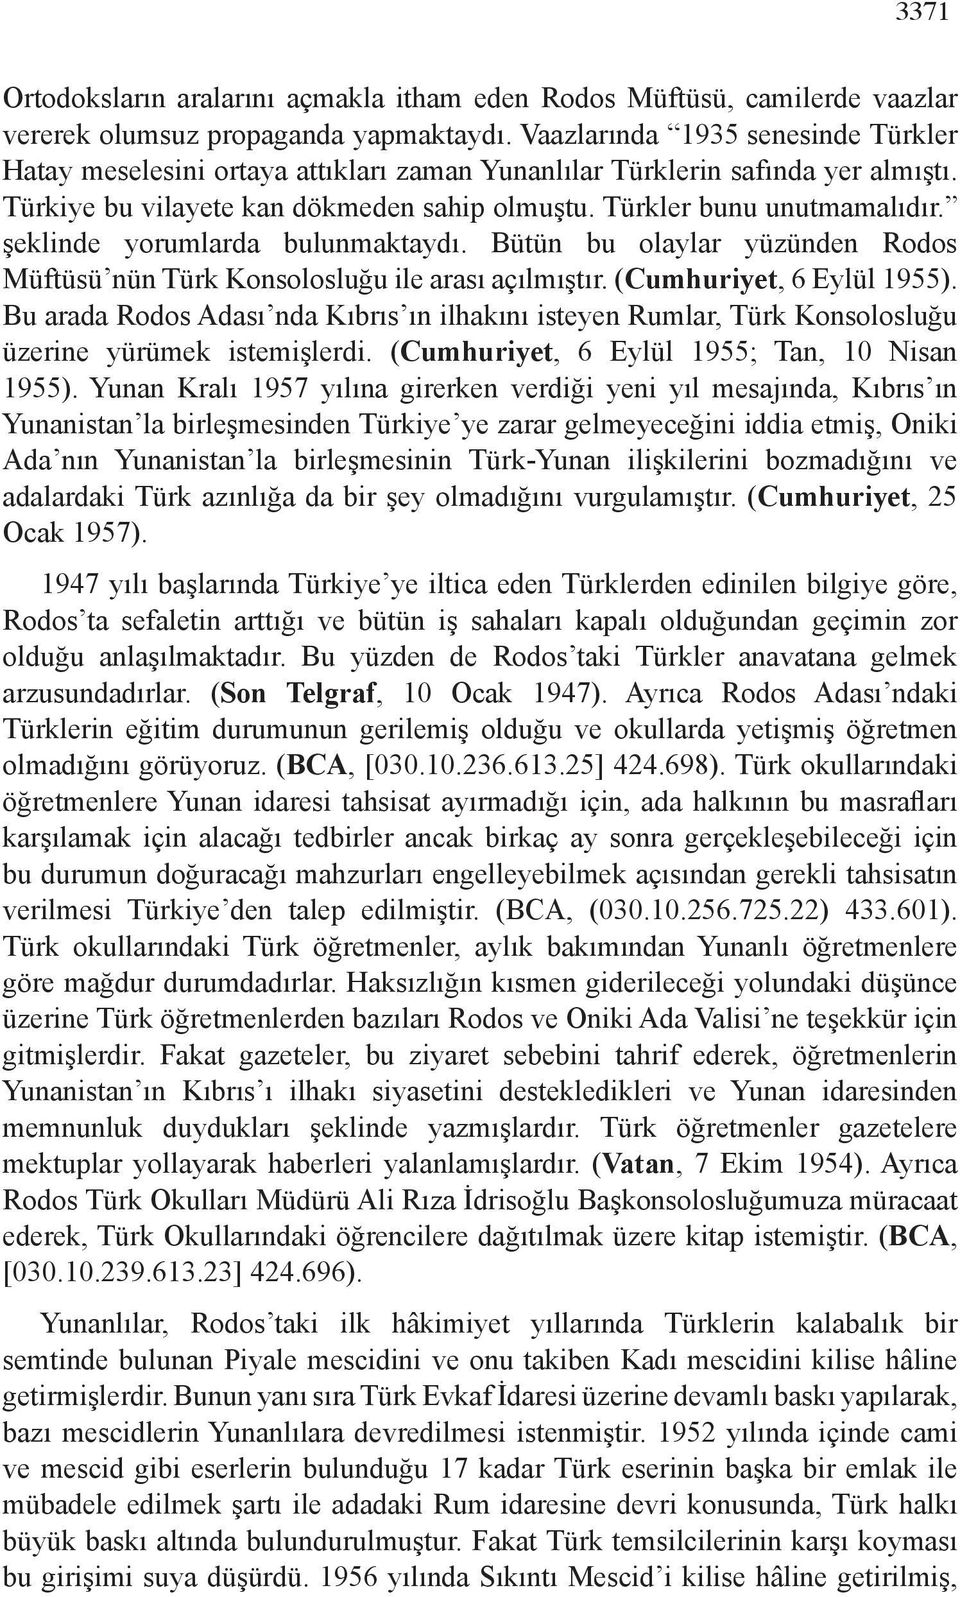 şeklinde yorumlarda bulunmaktaydı. Bütün bu olaylar yüzünden Rodos Müftüsü nün Türk Konsolosluğu ile arası açılmıştır. (Cumhuriyet, 6 Eylül 1955).